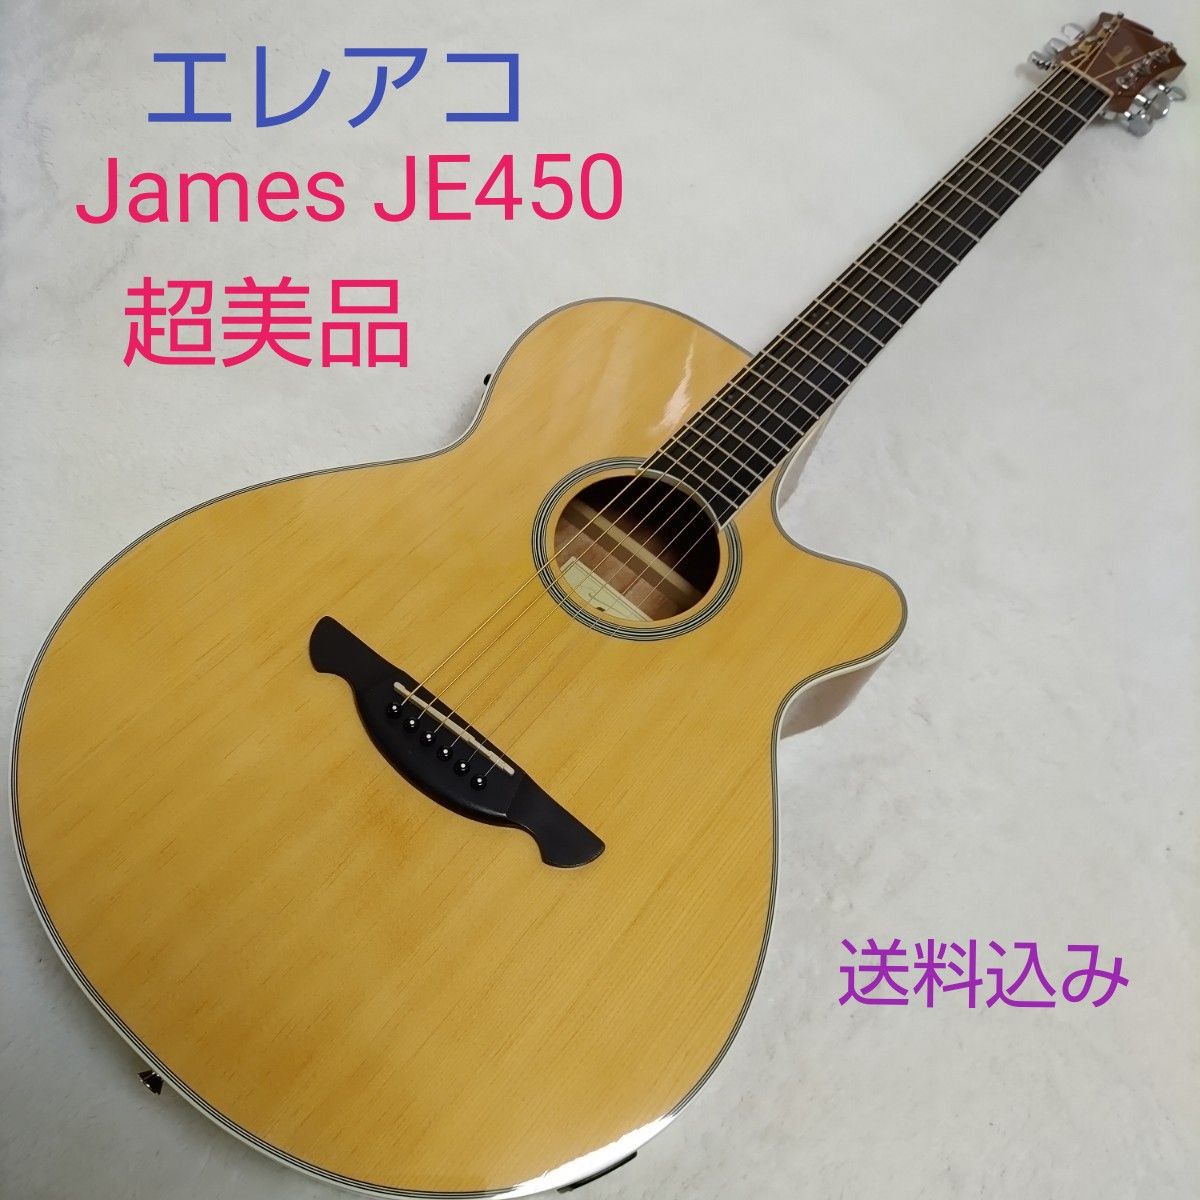 James JE450 エレアコ-